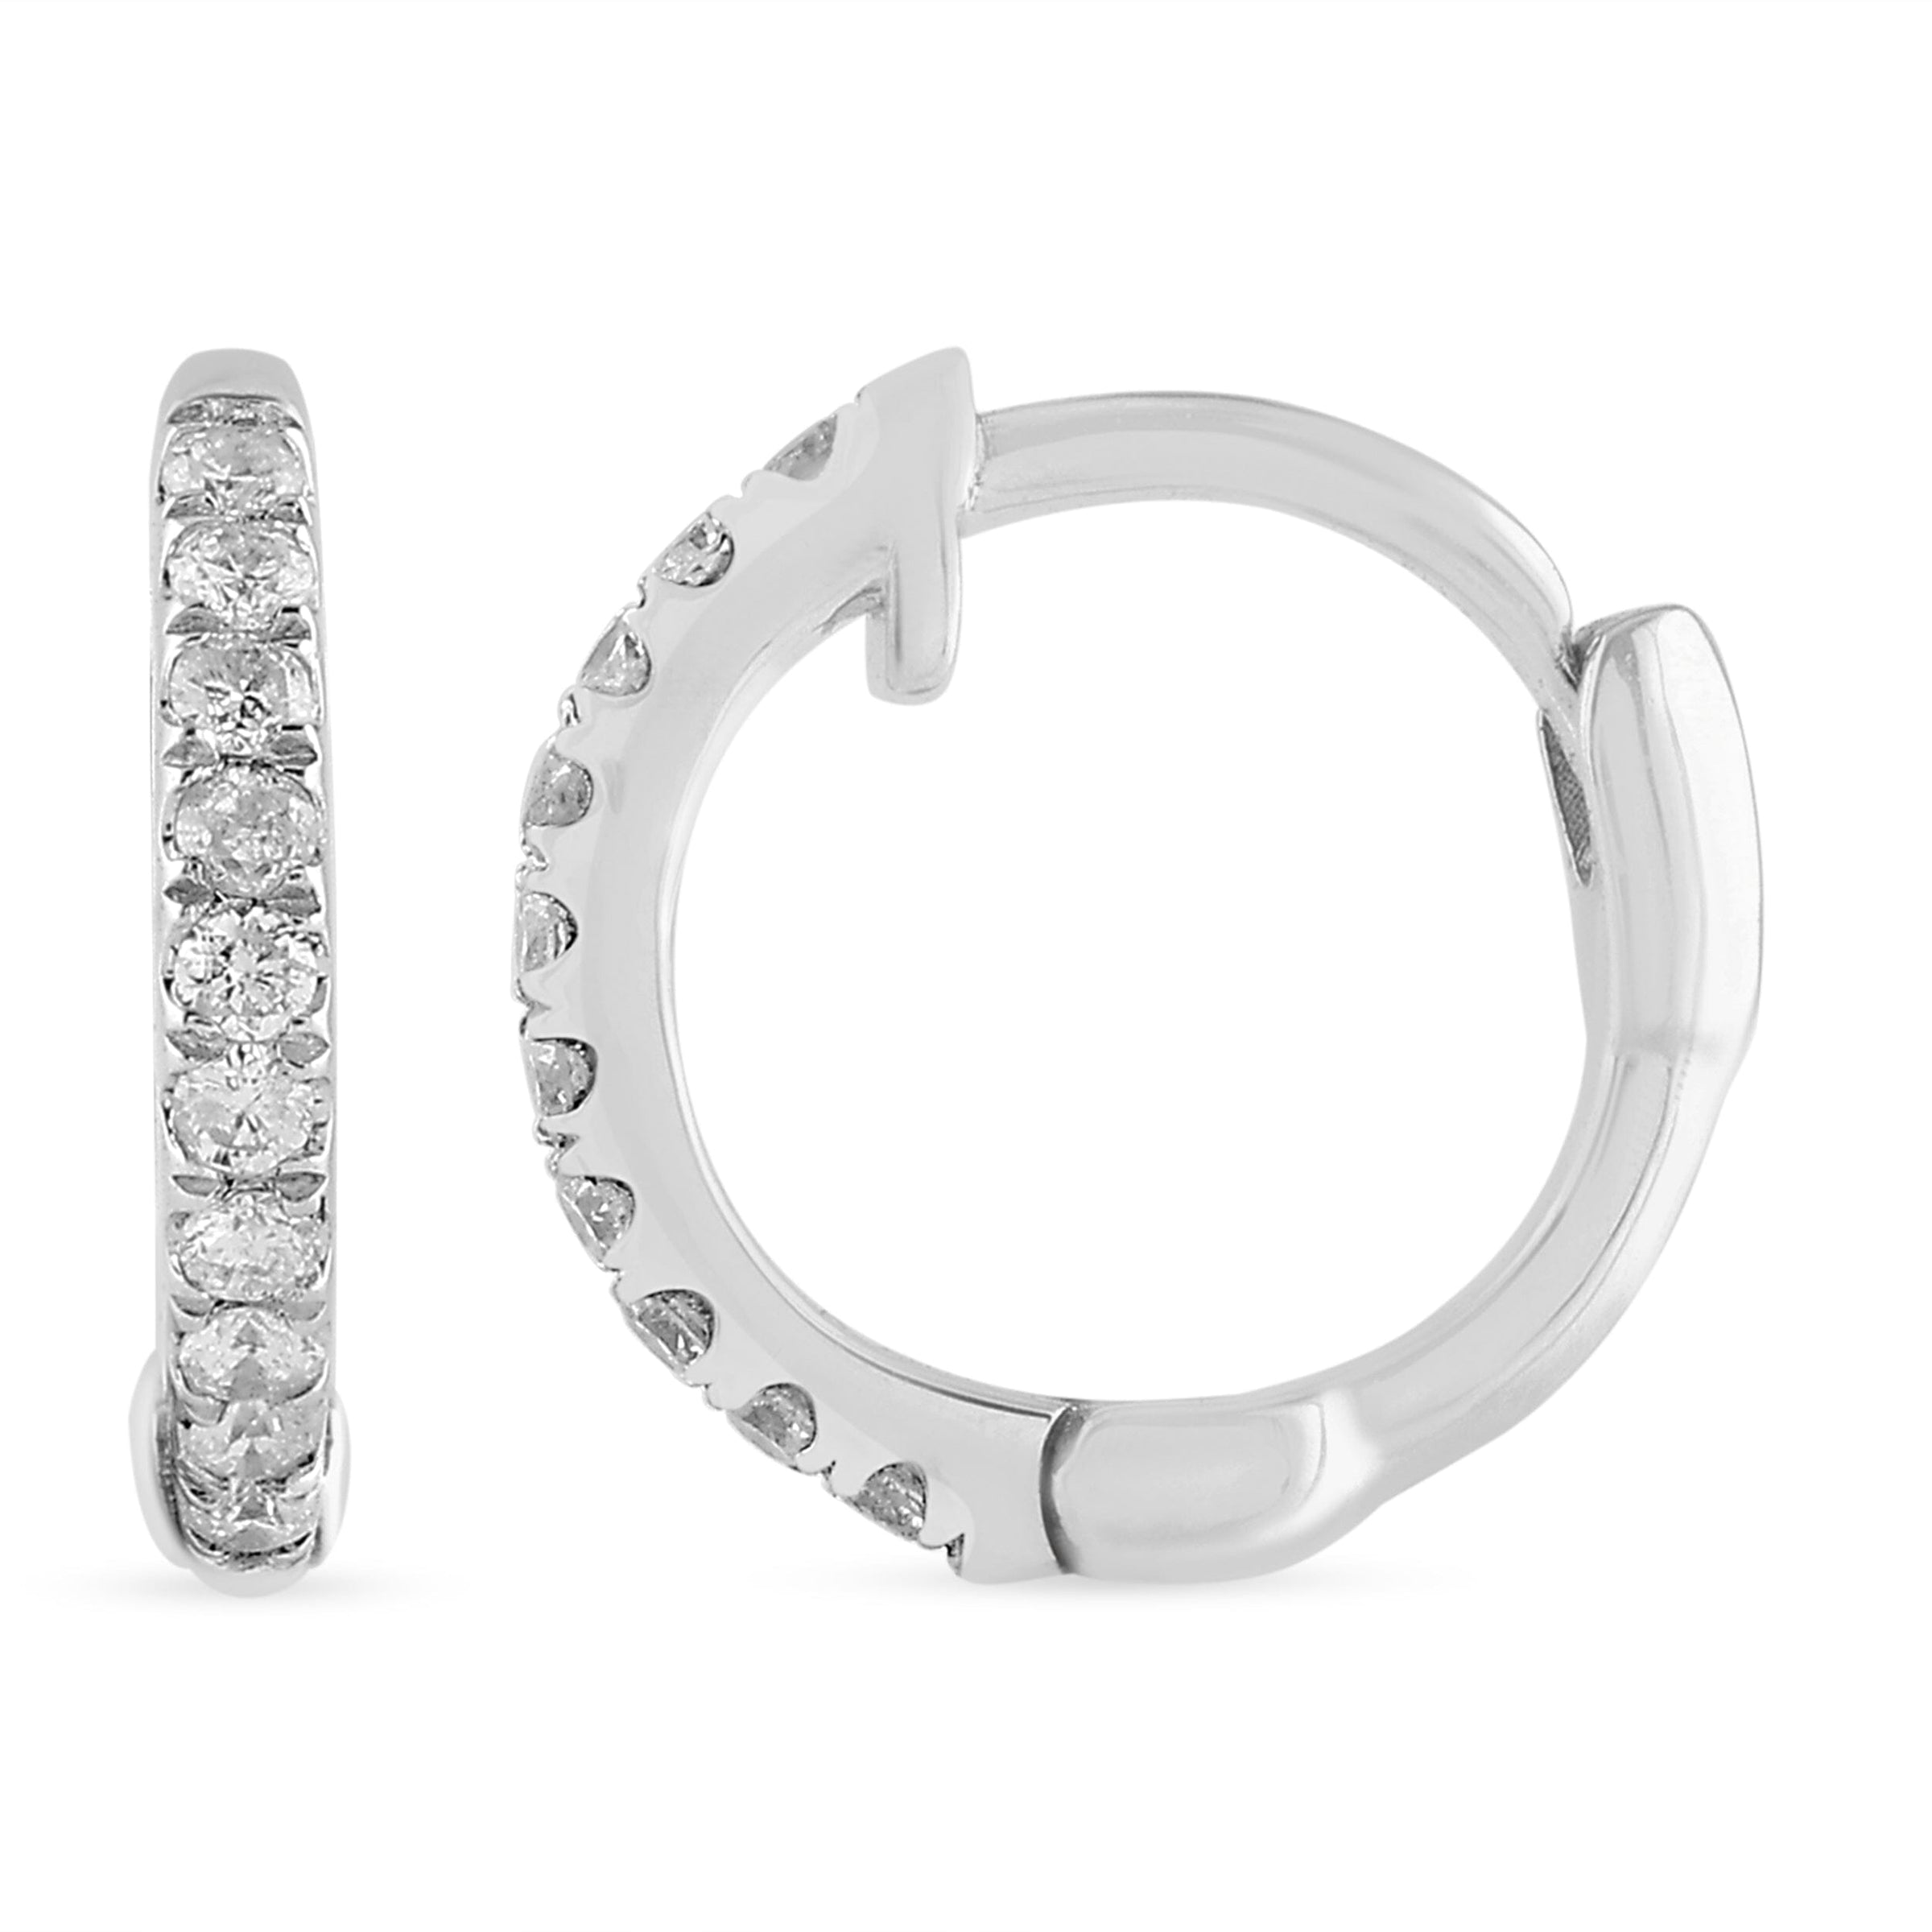 Brilliant Grain Huggie Hoop Earrings with 0.05ct of Diamonds in Sterling Silver Earrings Bevilles 